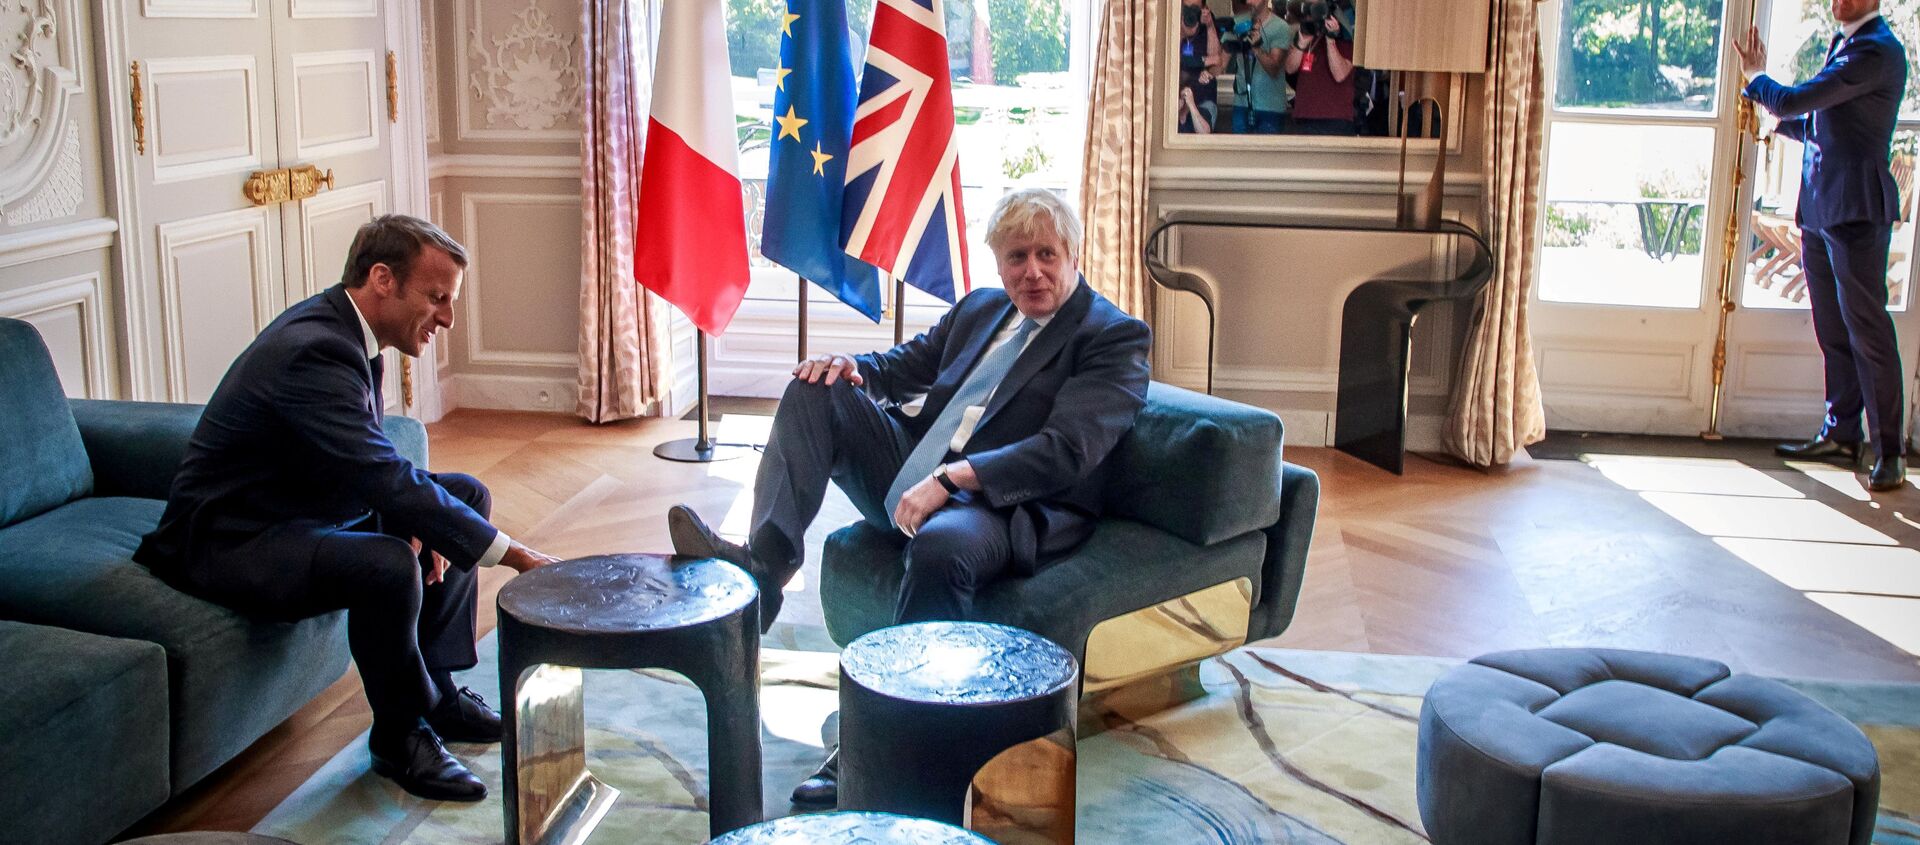 رئيس وزراء بريطانيا بوريس جونسون يضع قدمه على طاولة أمام الرئيس الفرنسي إيمانويل ماكرون بداخل قصر الإليزيه بالعاصمة الفرنسية باريس، 22 أغسطس/آب 2019 - سبوتنيك عربي, 1920, 31.10.2021